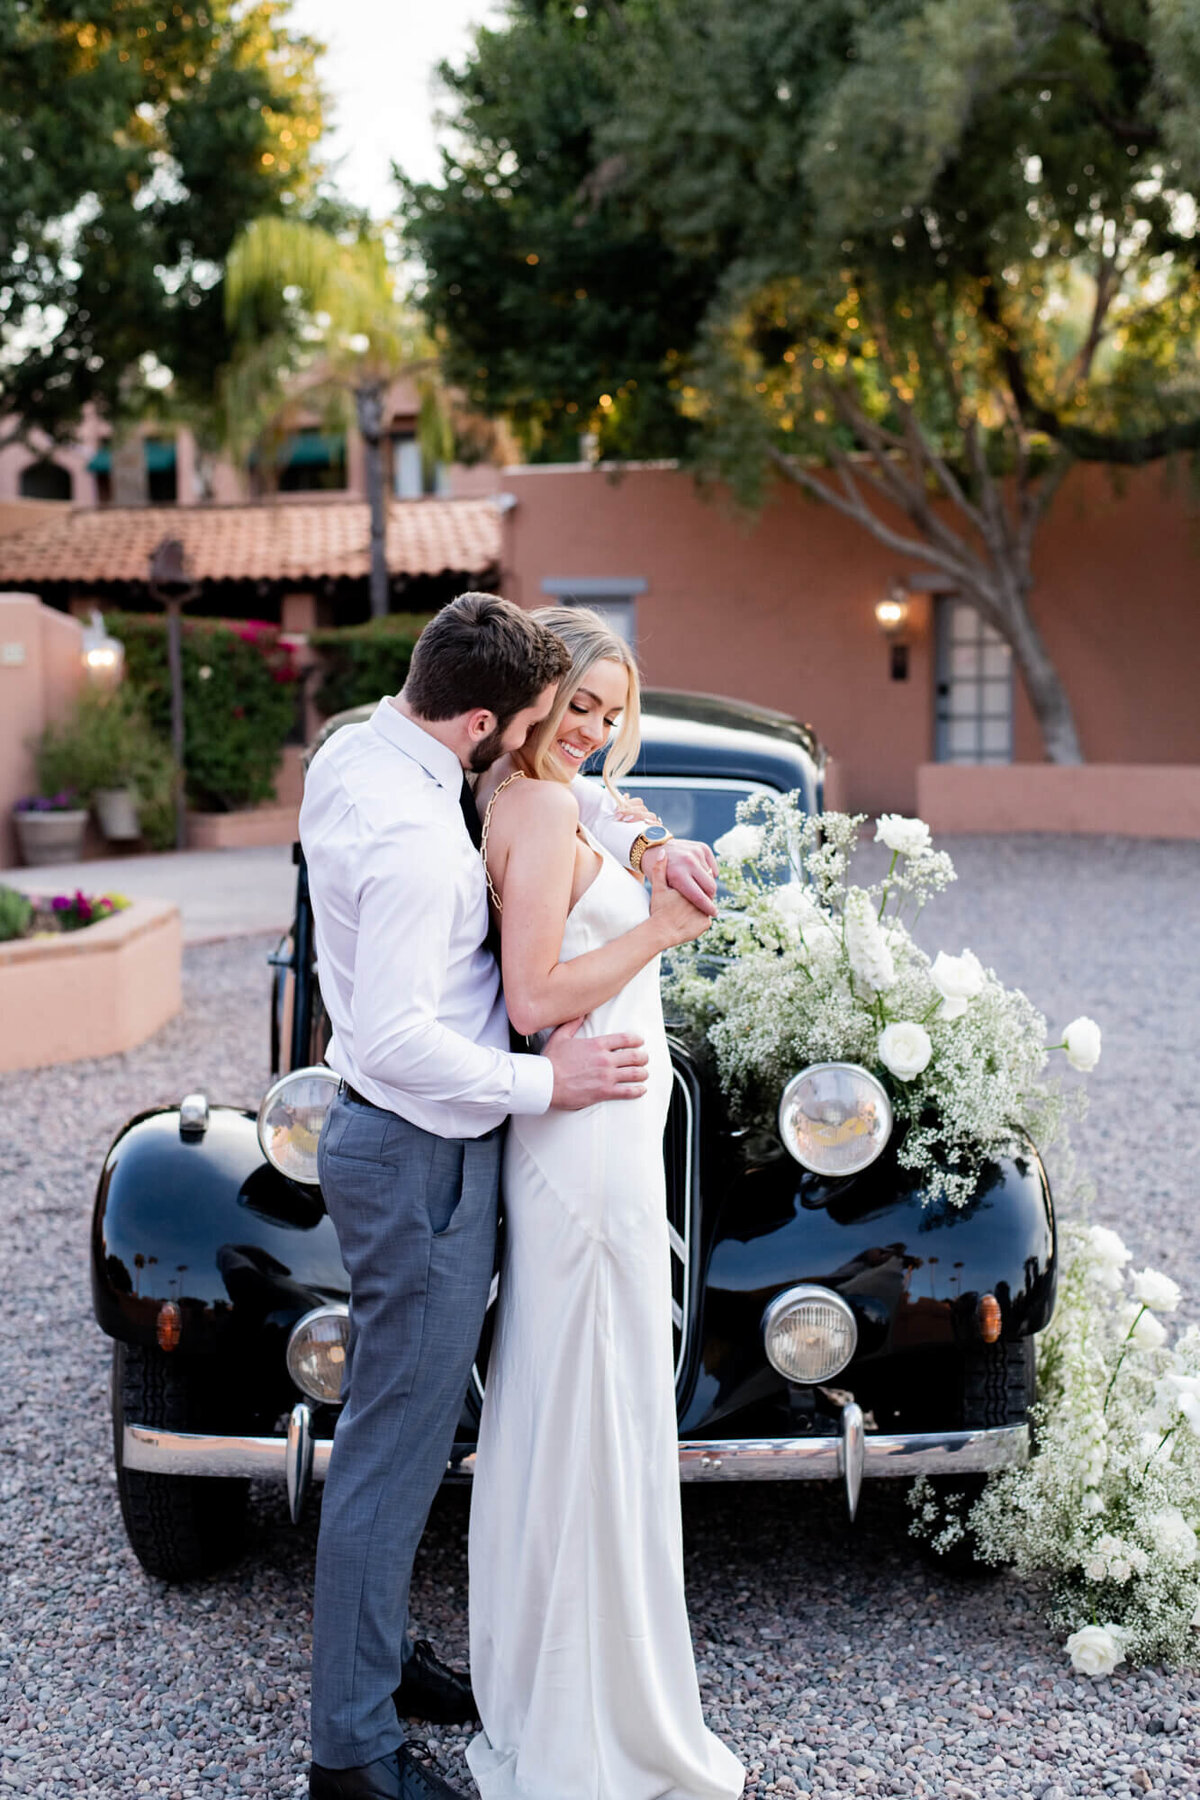 wedding-getaway-car-photos